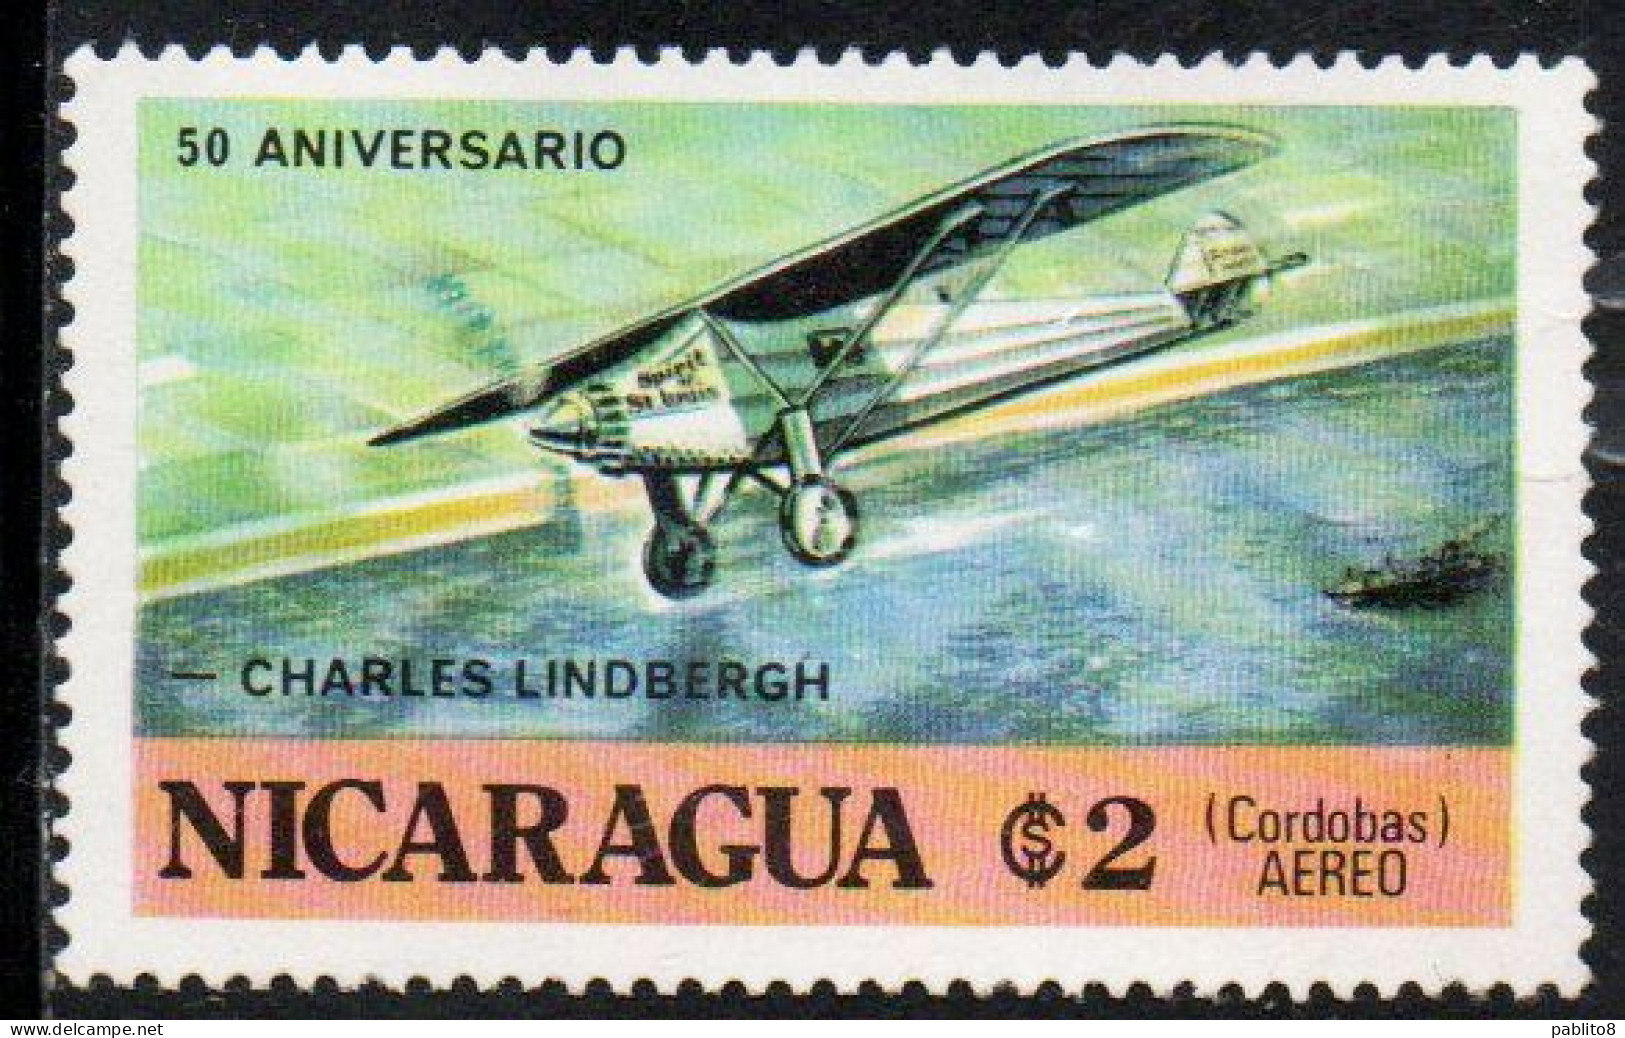 NICARAGUA 1977 CHARLES A. LINDBERGH PLANE FLIGHT PACIFIC COAST 2cor MNH - Nicaragua